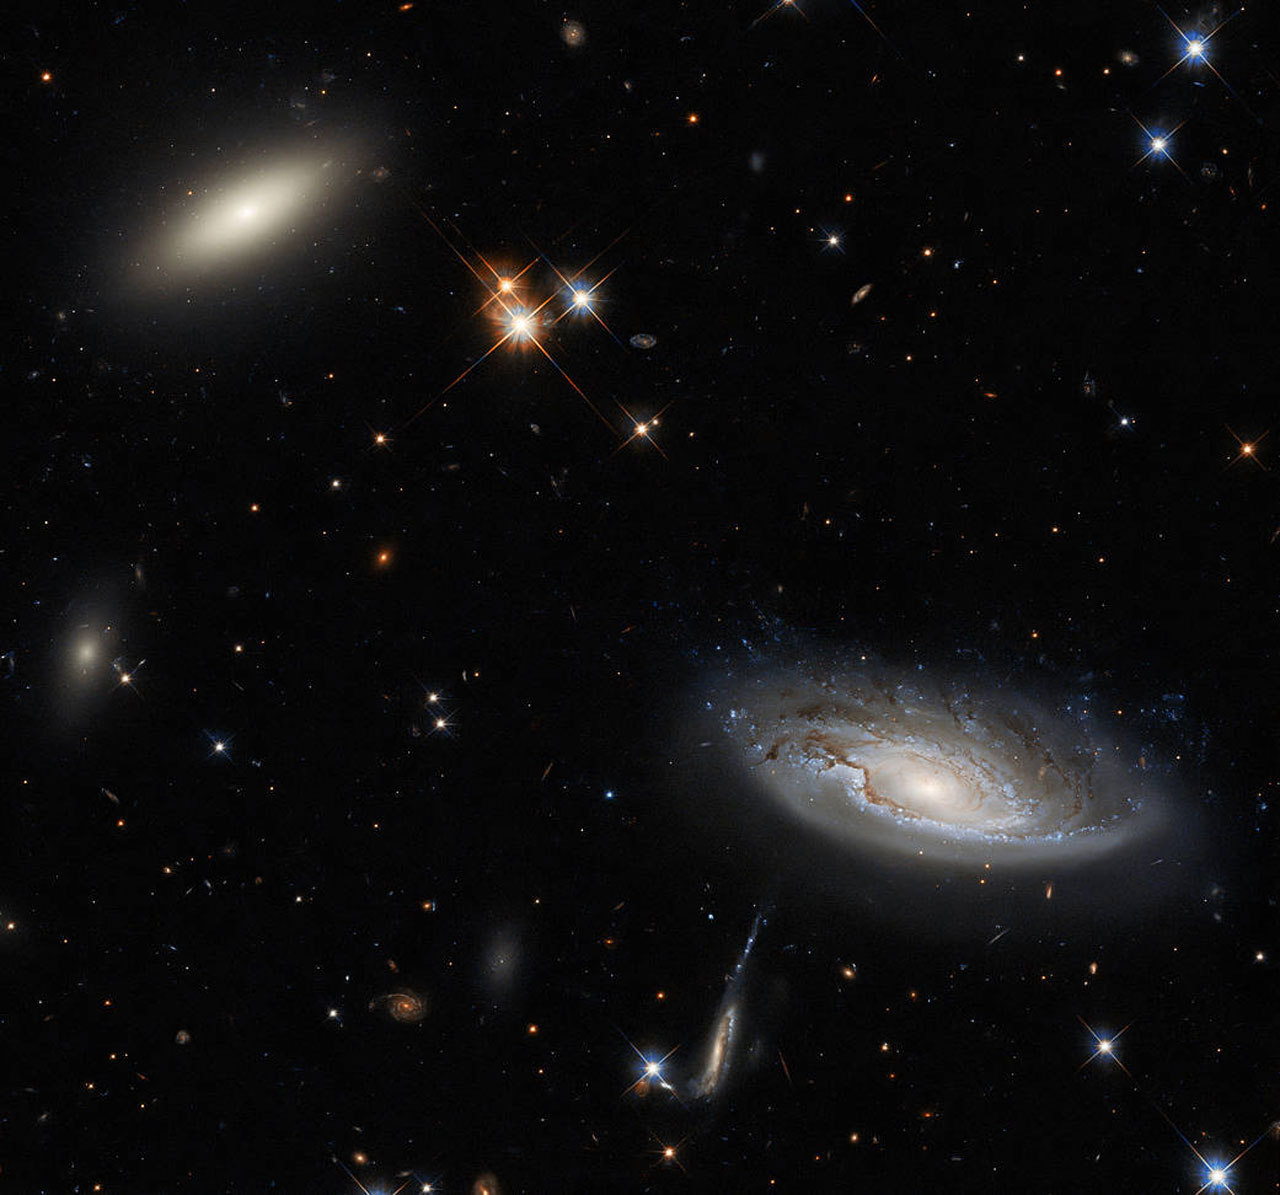 哈勃太空望远镜拍摄的透镜星系2MASX J03193743+413758和螺旋星系UGC 2665